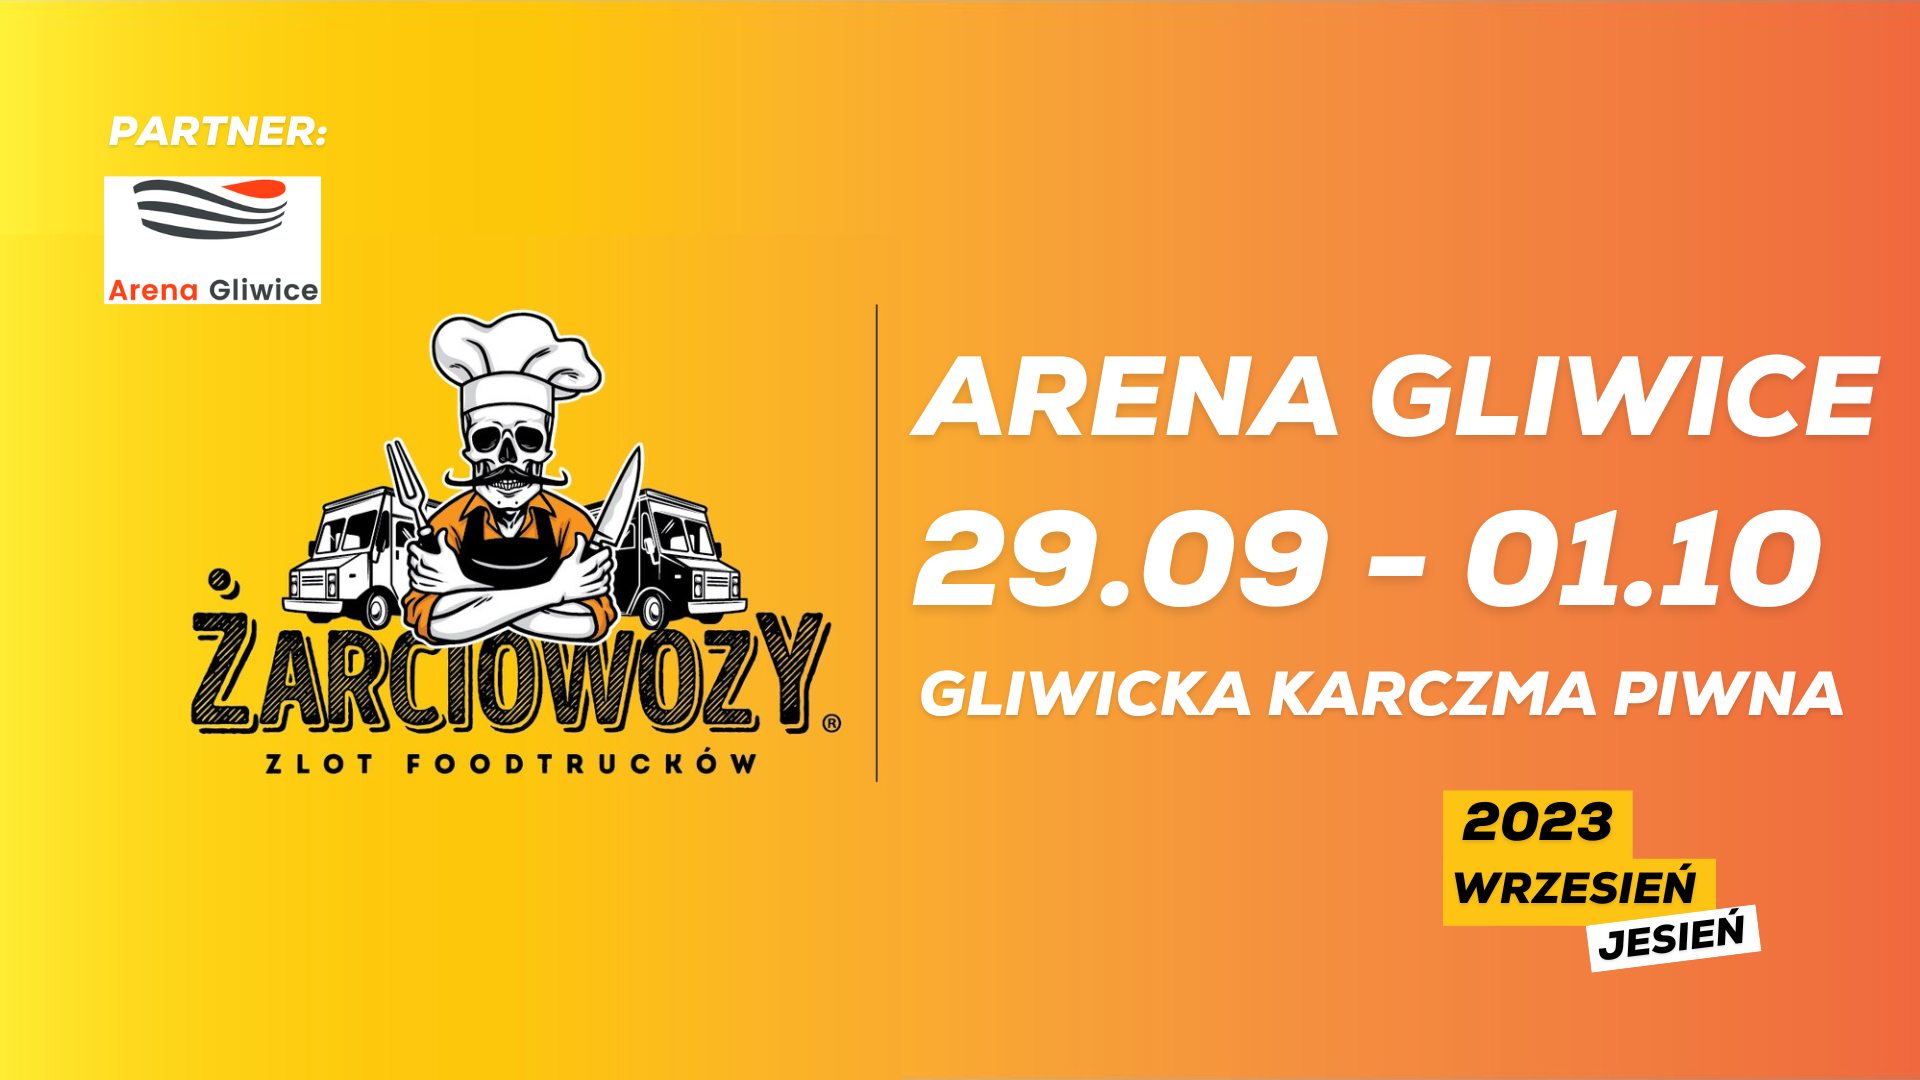 Gliwice: Żarciowozy w Arenie Gliwice od 29  września do 1 października